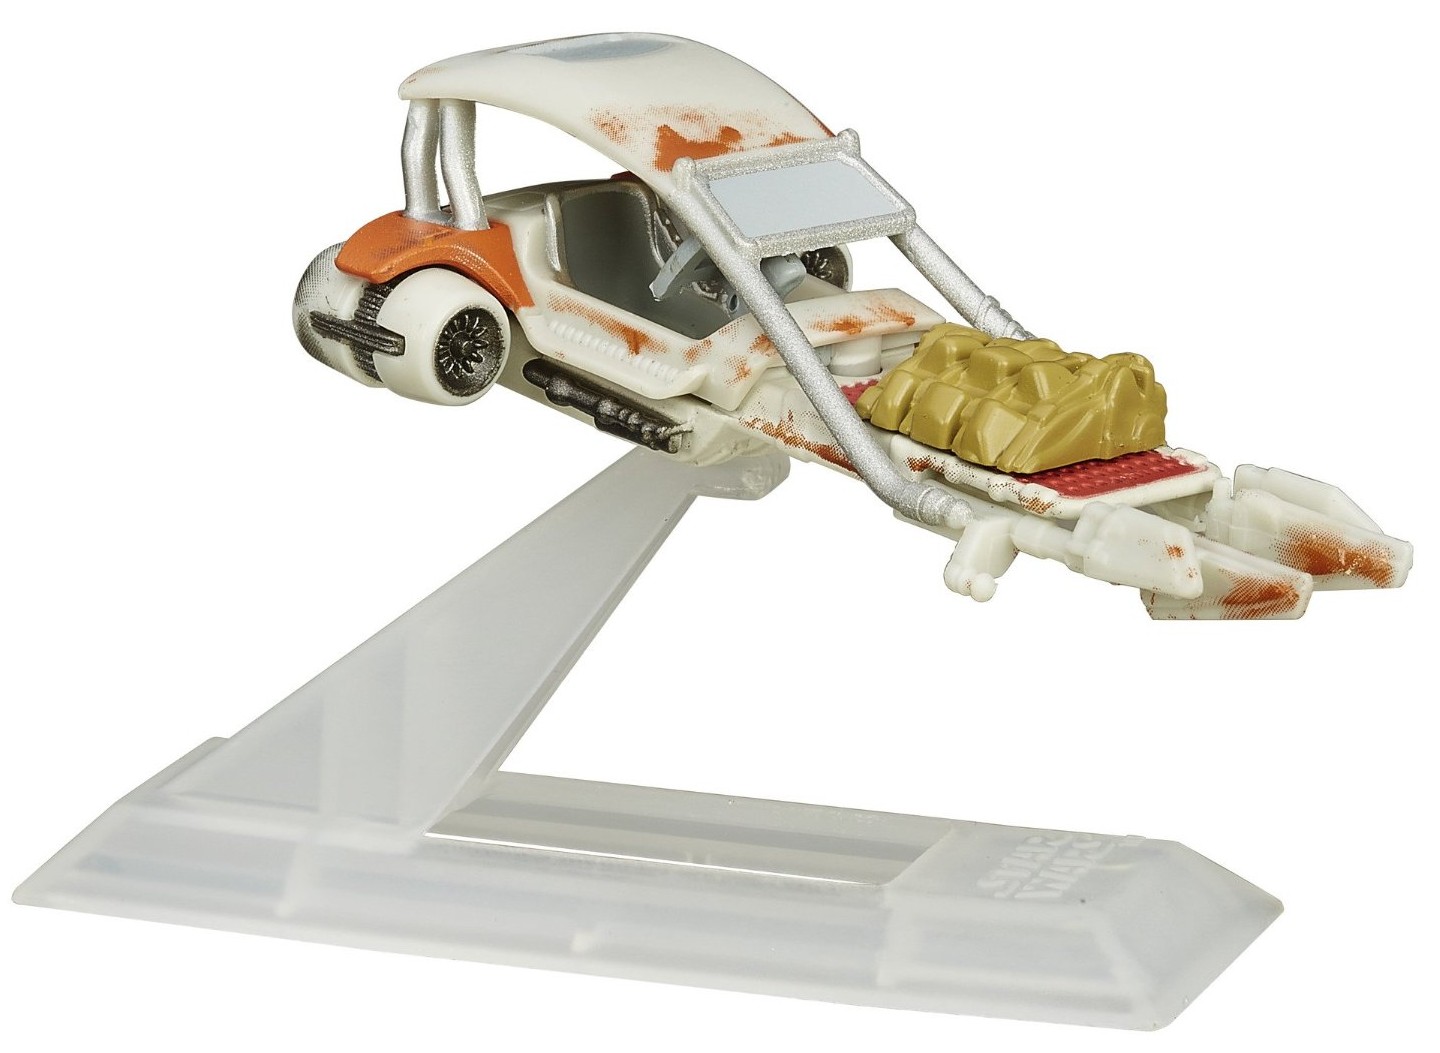 The First Order Jakku Landspeeder Titanium Series vehicle toy 2